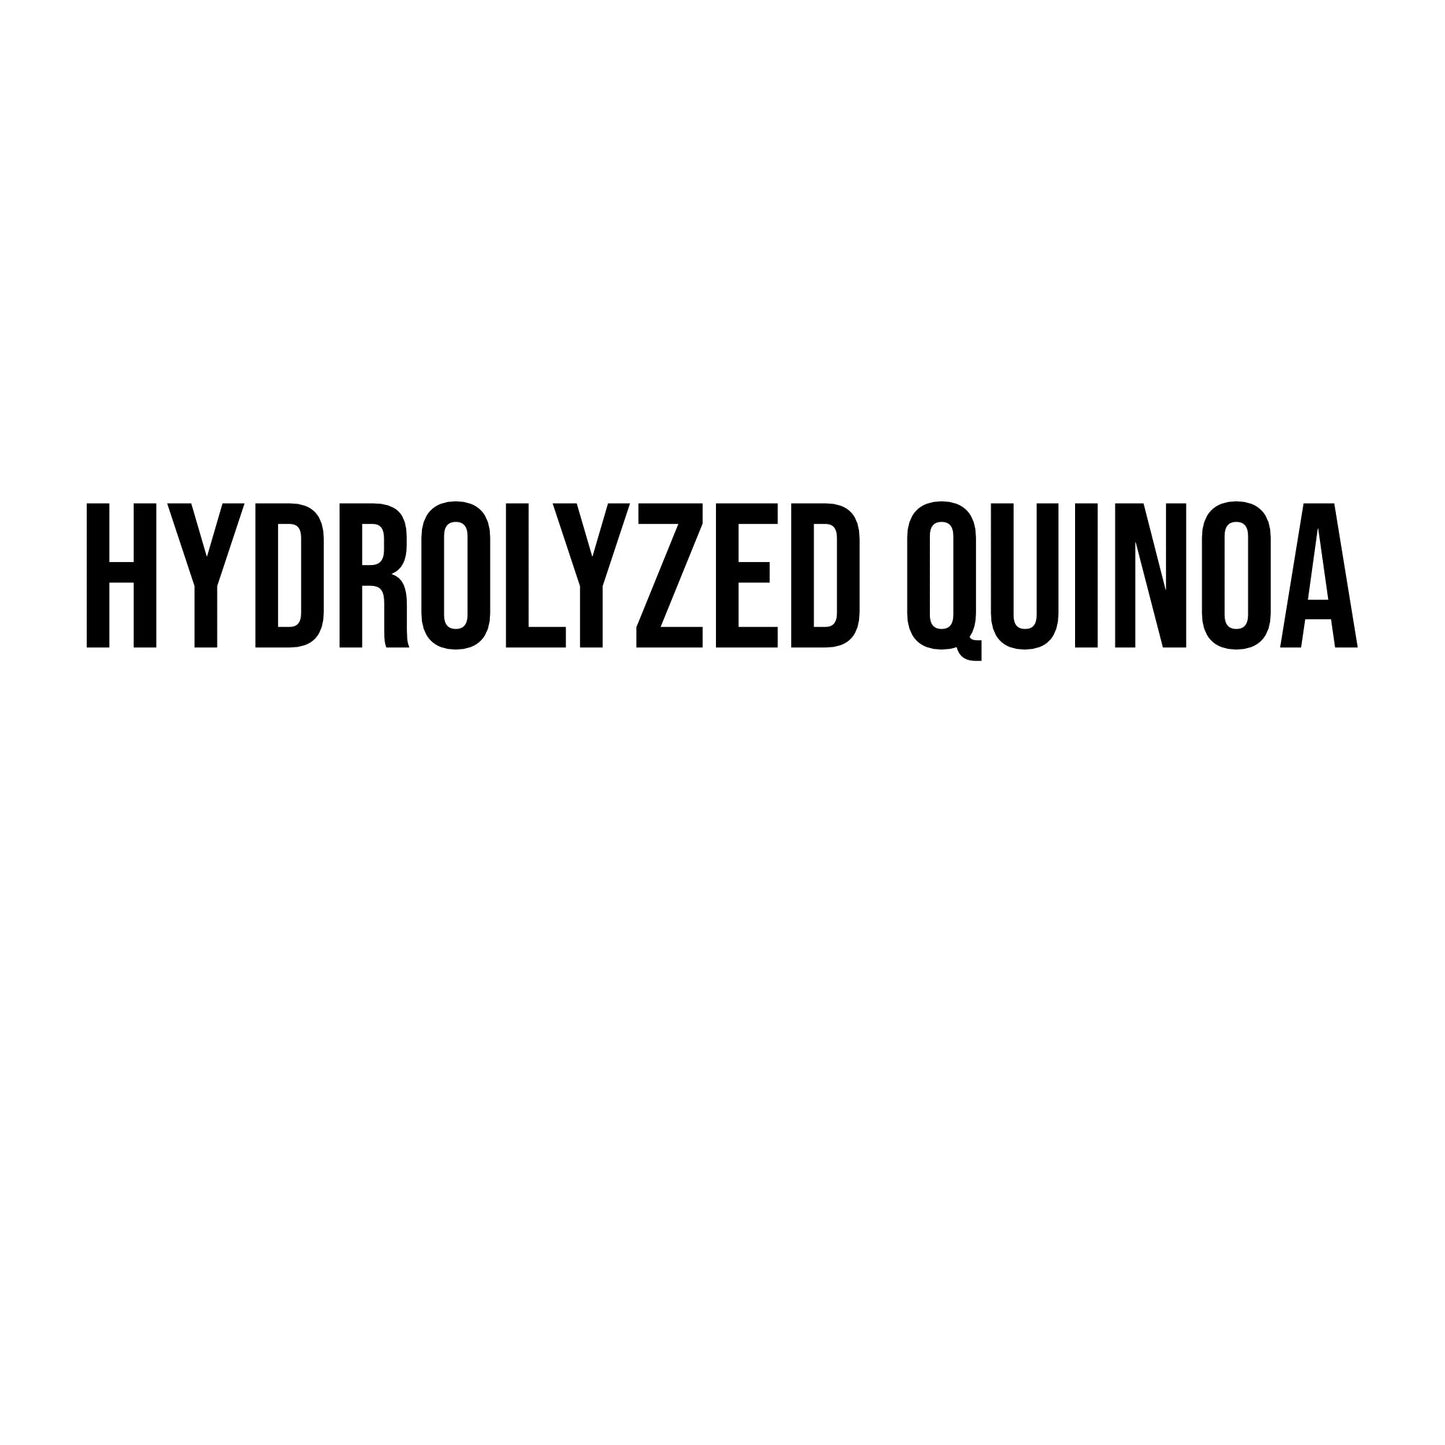 Hydrolyzed Quinoa